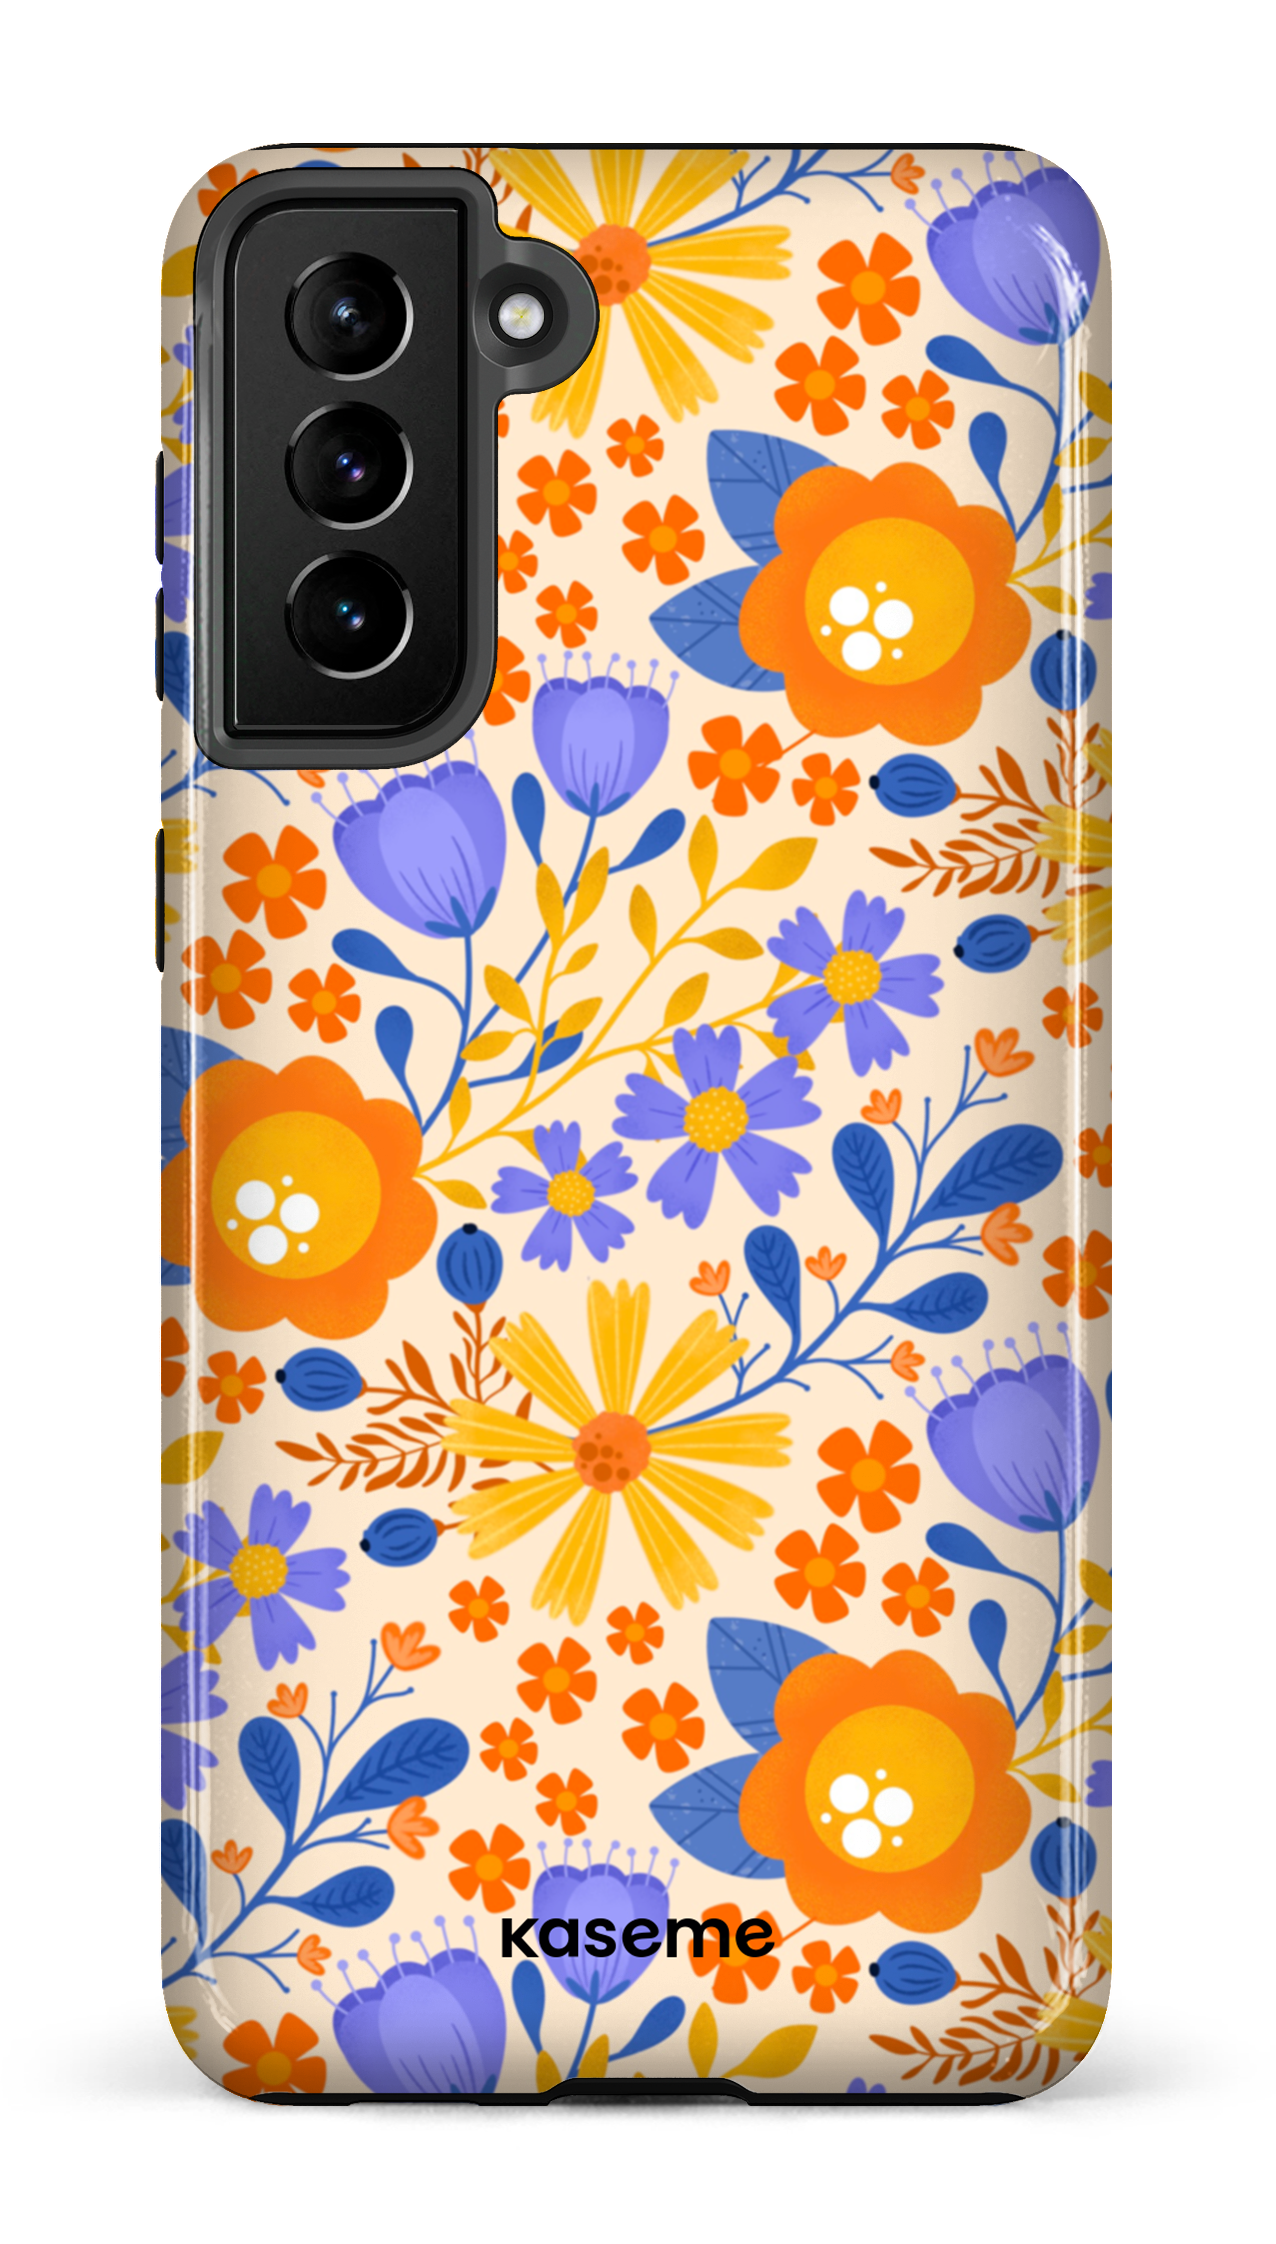 Autumn Bloom by Createdbyginny - Galaxy S21 Plus